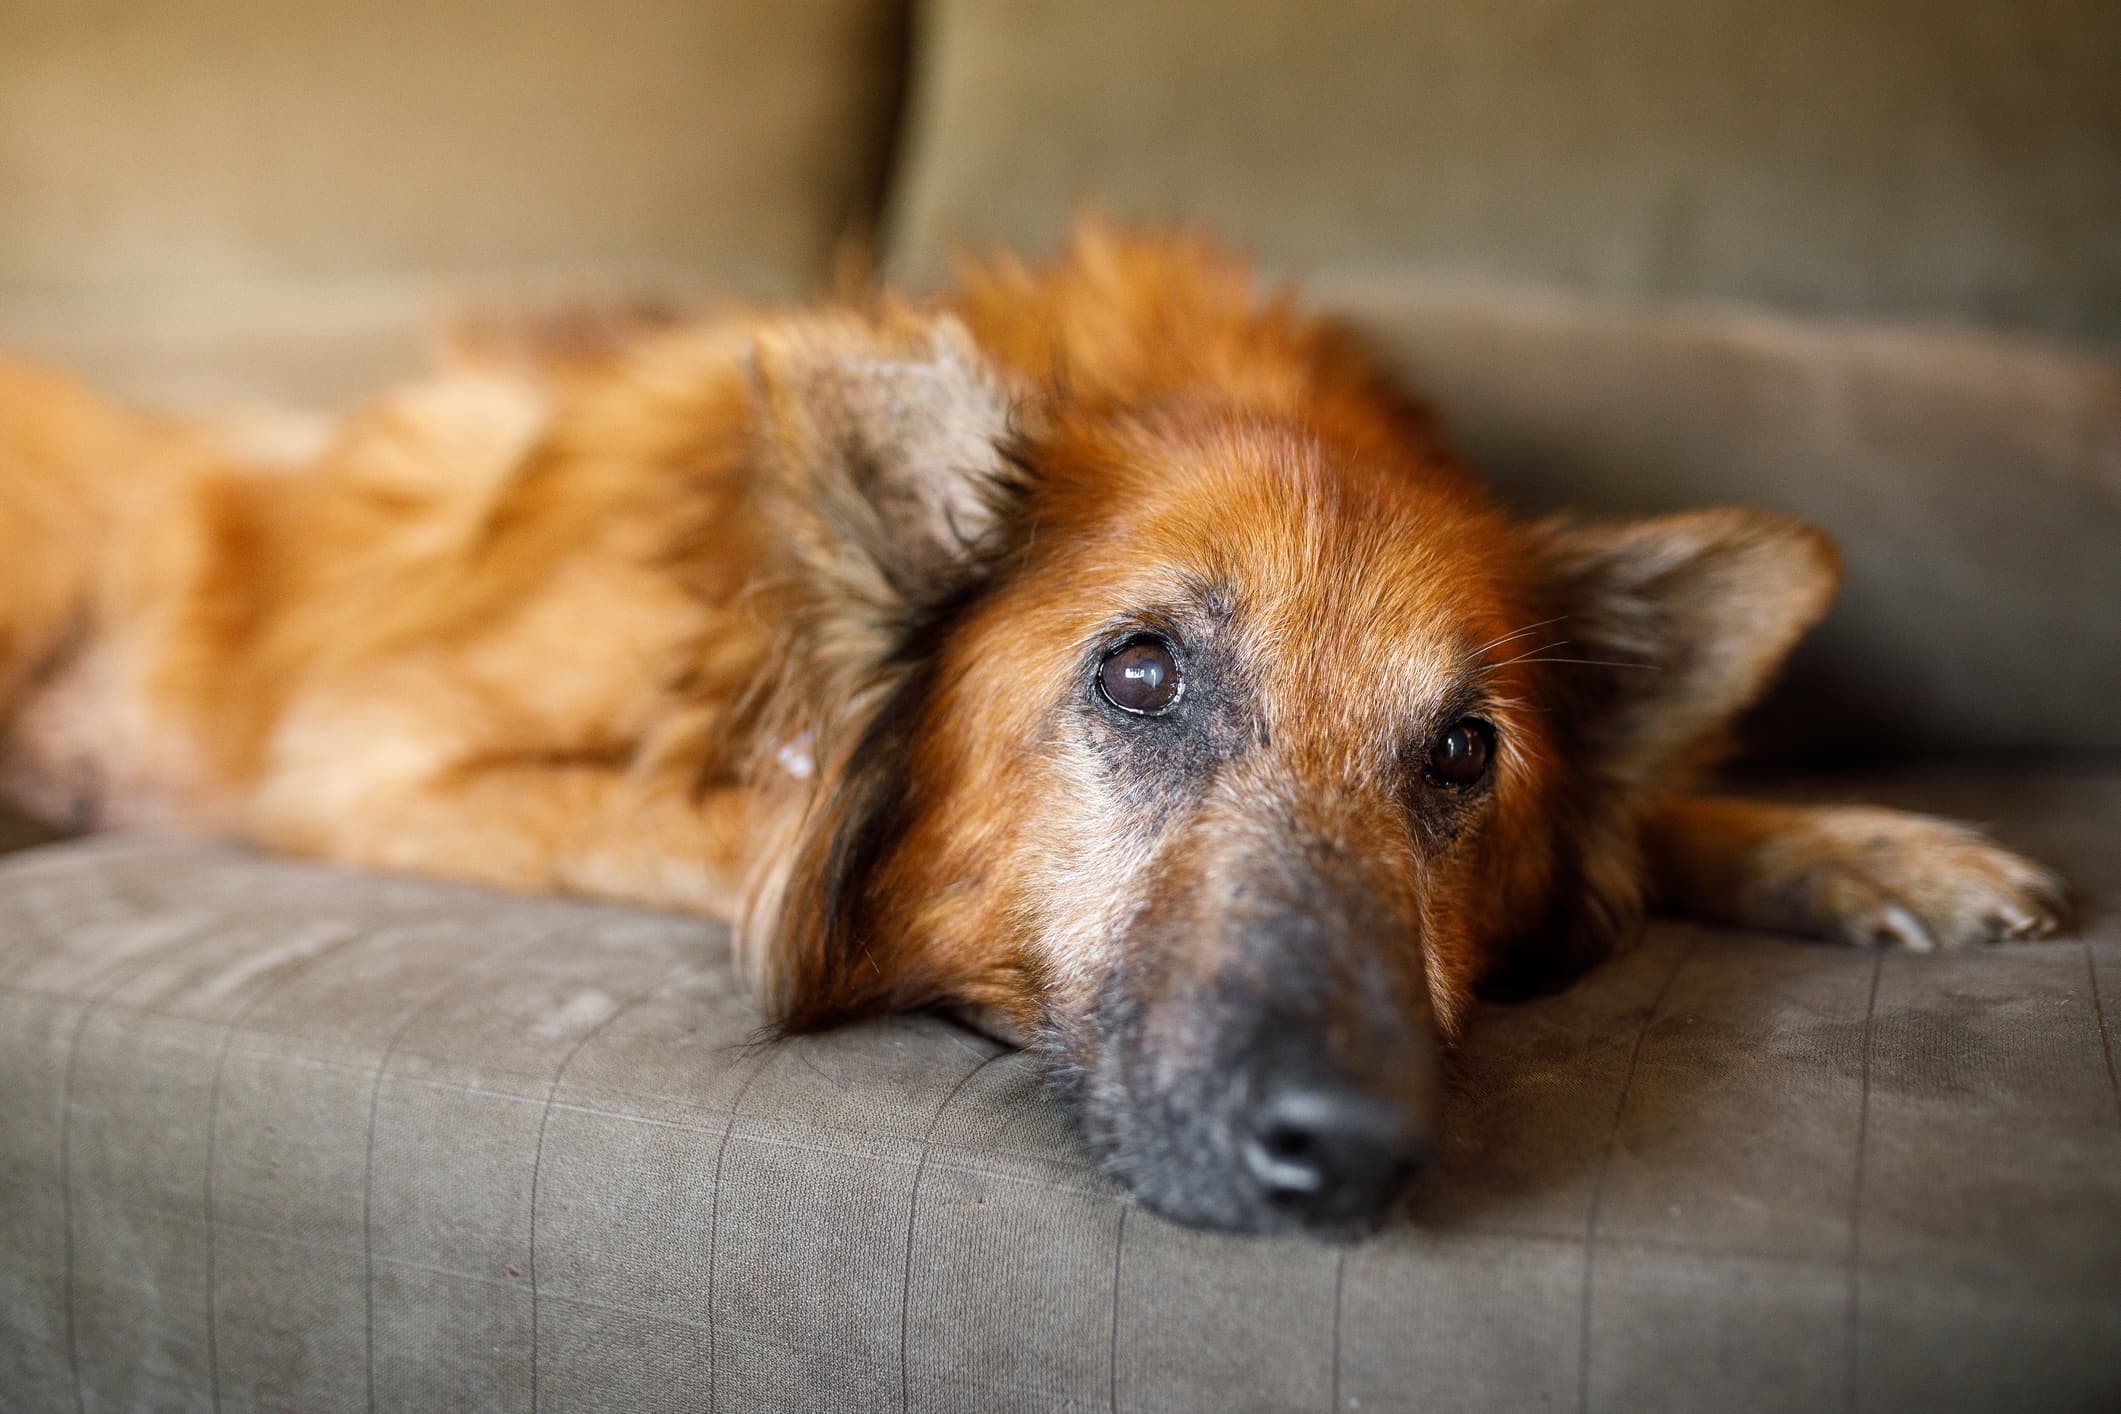 Um cão de pelo marrom com alguns pelos brancos aparentando ser idoso deitado em um sofá marrom em fundo desfocado.